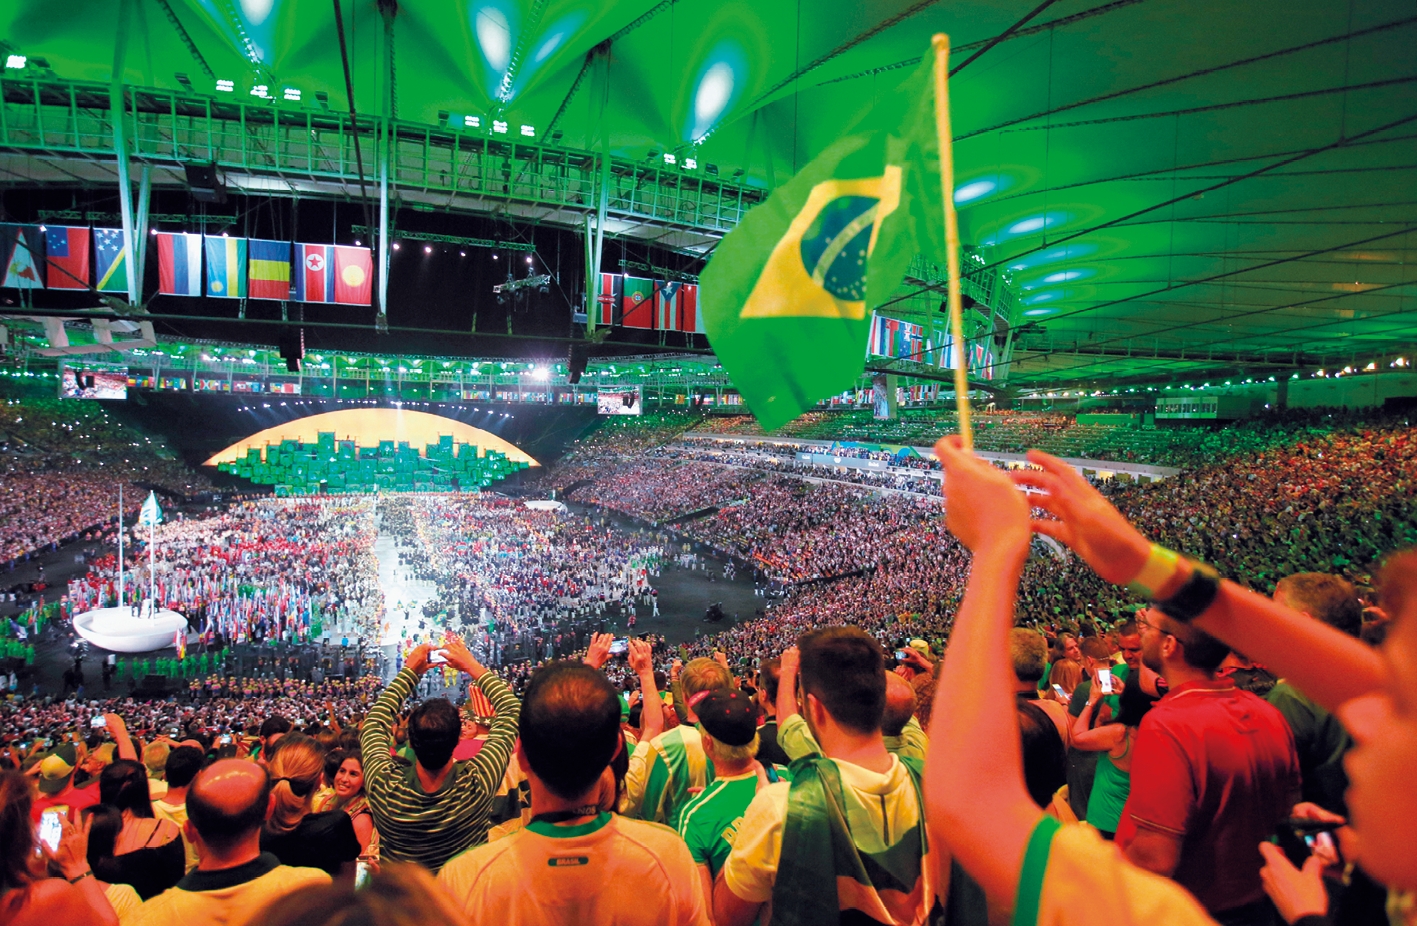 Fotografia. Vista do interior de um estádio de futebol coberto, com diversas pessoas com camisas do Brasil ocupando as arquibancadas e, ao centro, um espetáculo acontecendo. No alto, bandeiras de vários países enfileiradas.